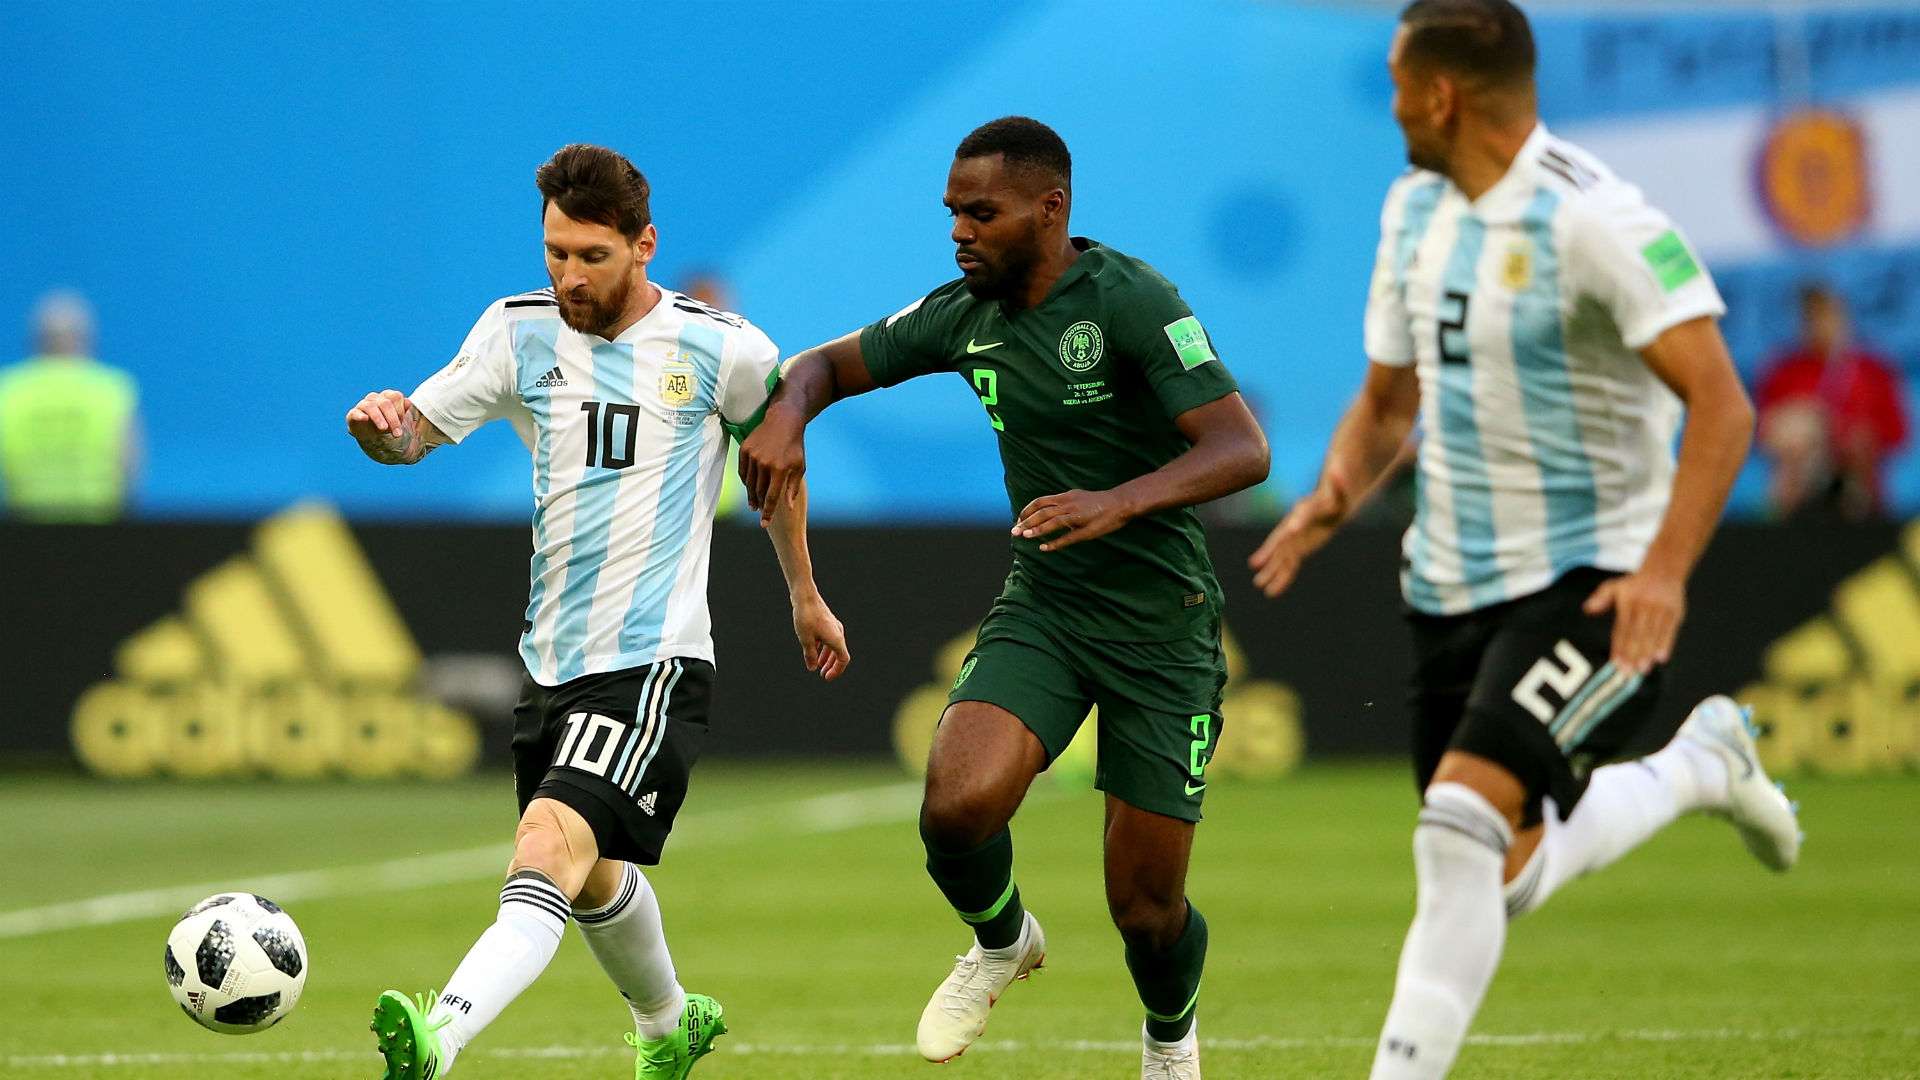 Idowu Lionel Messi Argentina Nigeria World Cup Russi 2018 26062018